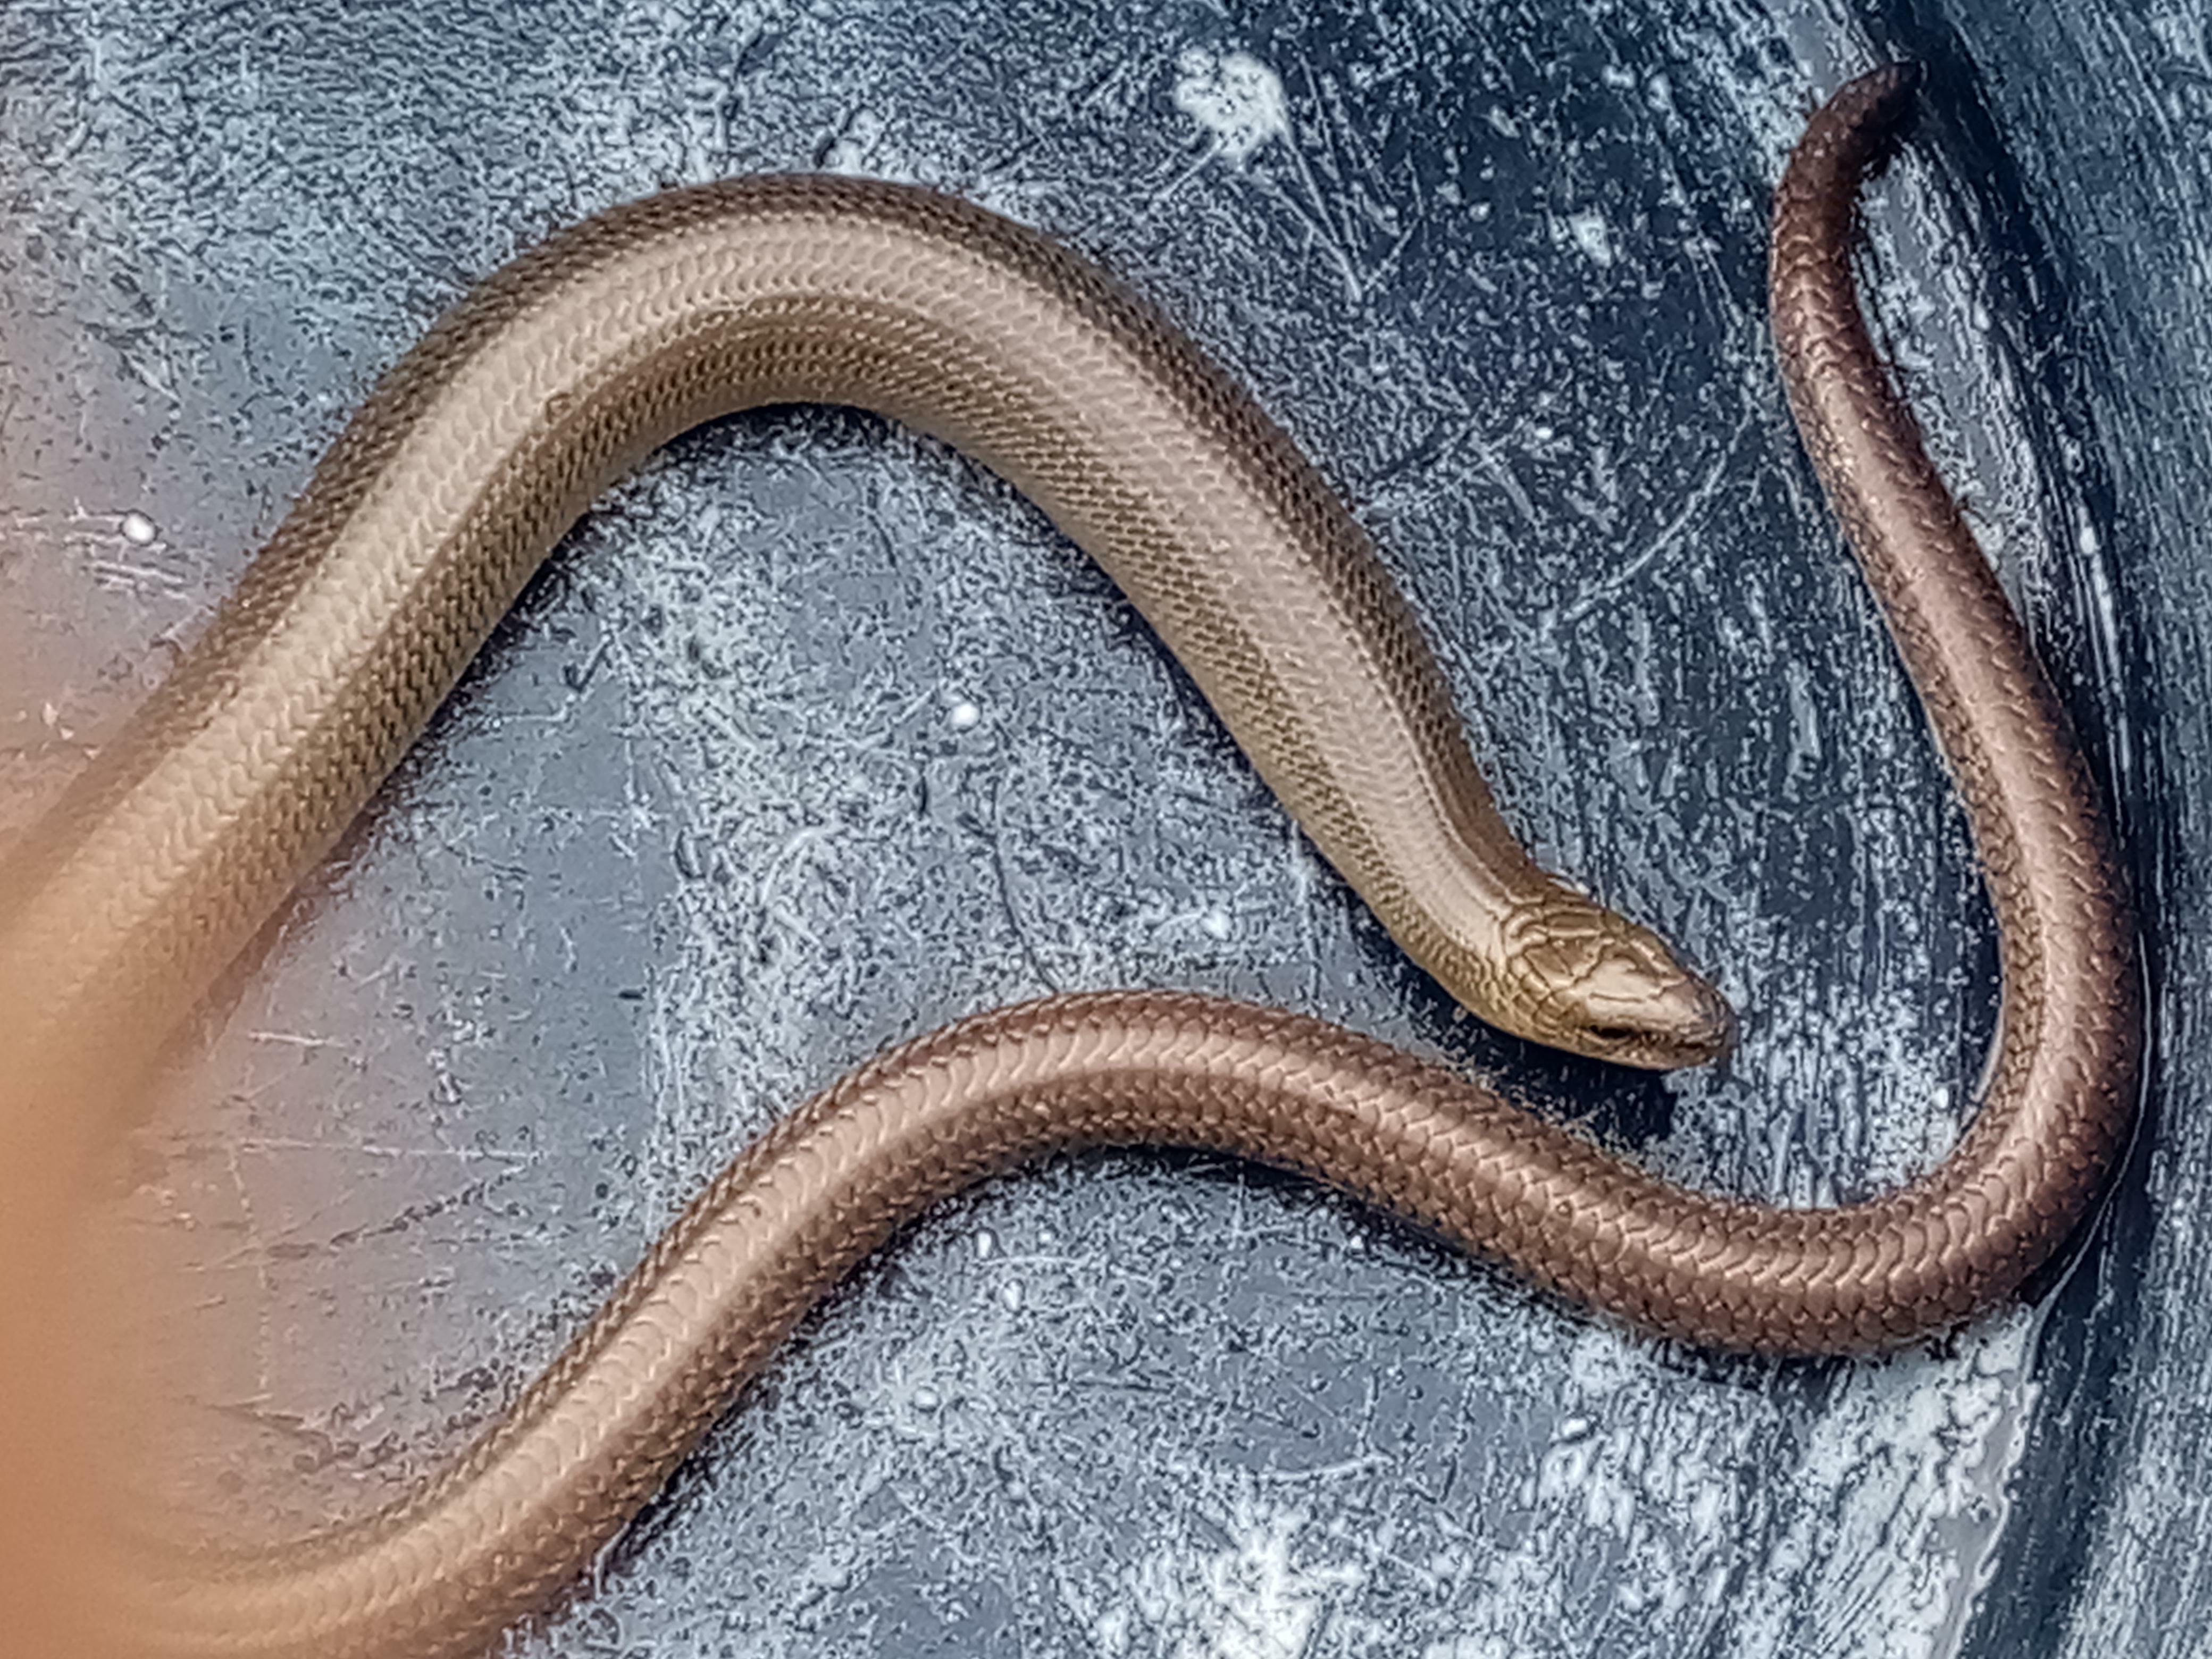 J'ai trouvé ce petit salaud dans mon jardin, il ne mord pas, il me laisse même le toucher et le manipuler. Qu'est-ce que ça peut être ? Est-ce un serpent non venimeux ou juste un lézard sans pattes ?